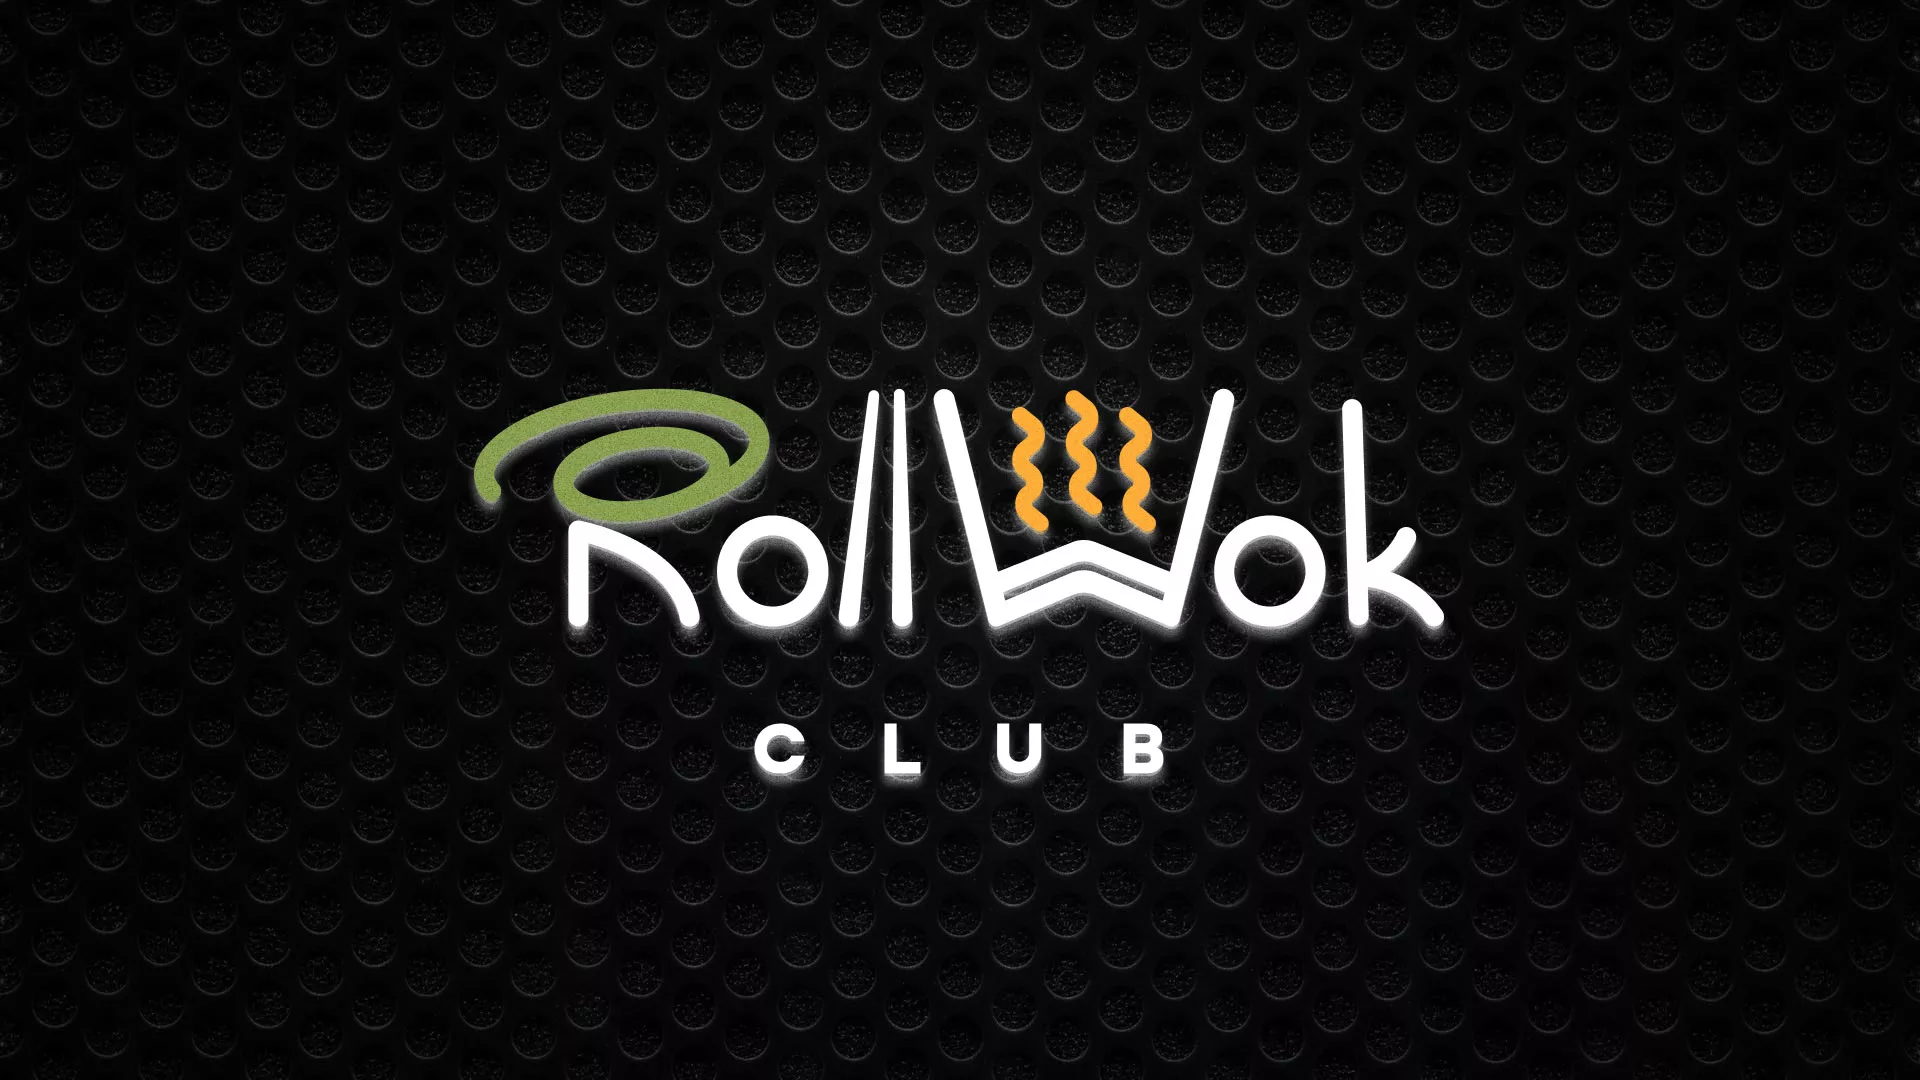 Брендирование торговых точек суши-бара «Roll Wok Club» в Новошахтинске